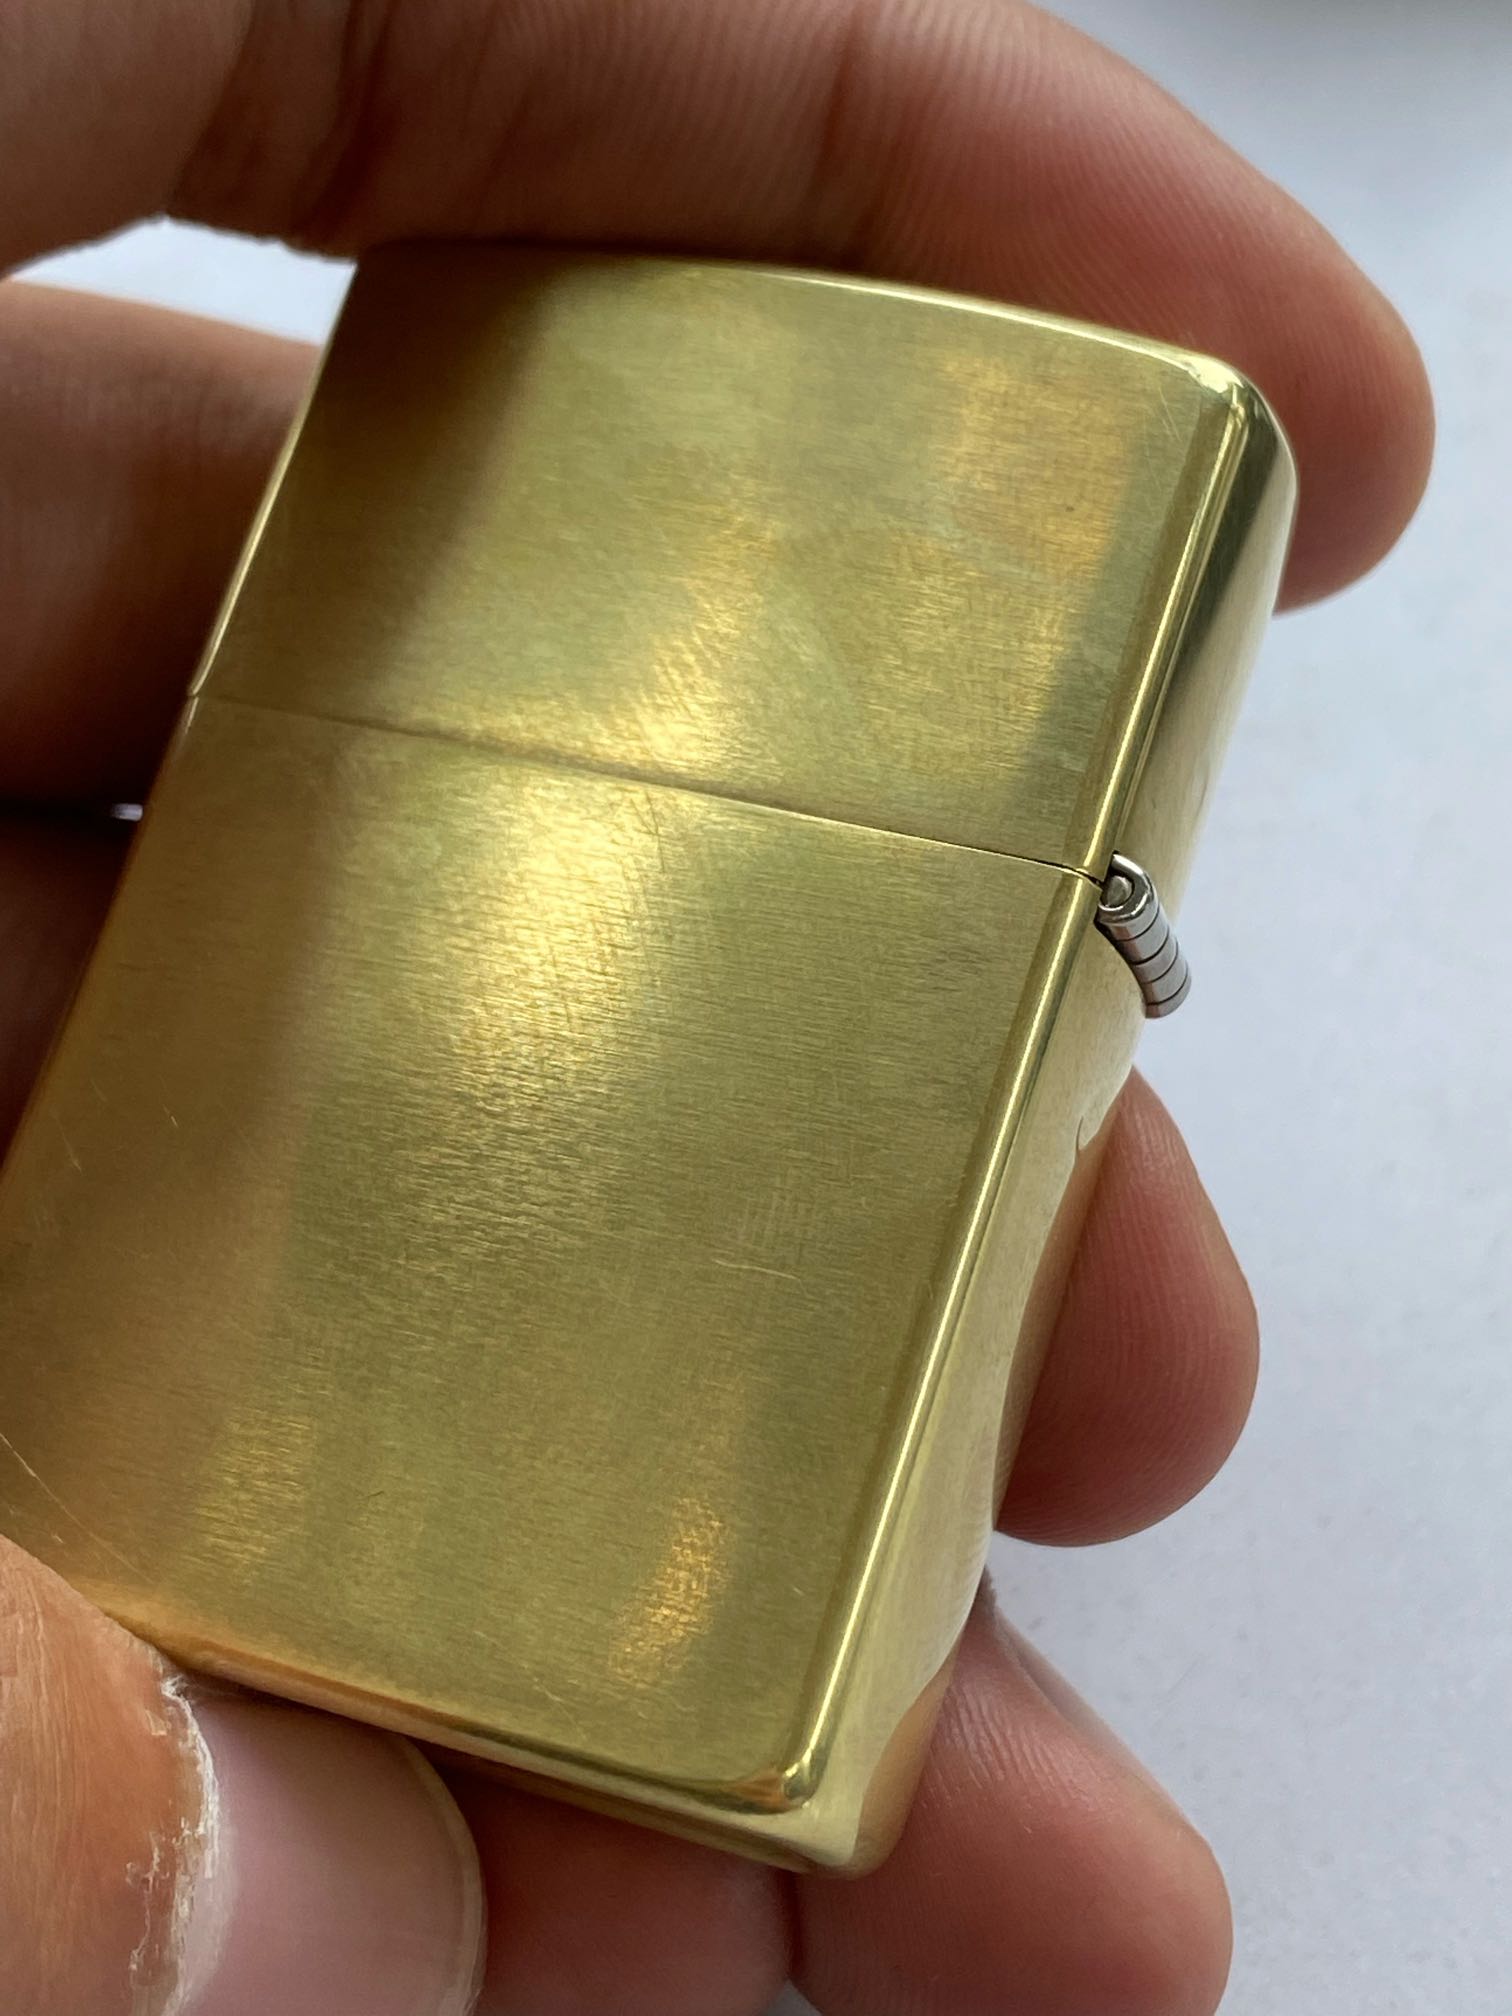 纯铜zippo用牙膏抛光图片